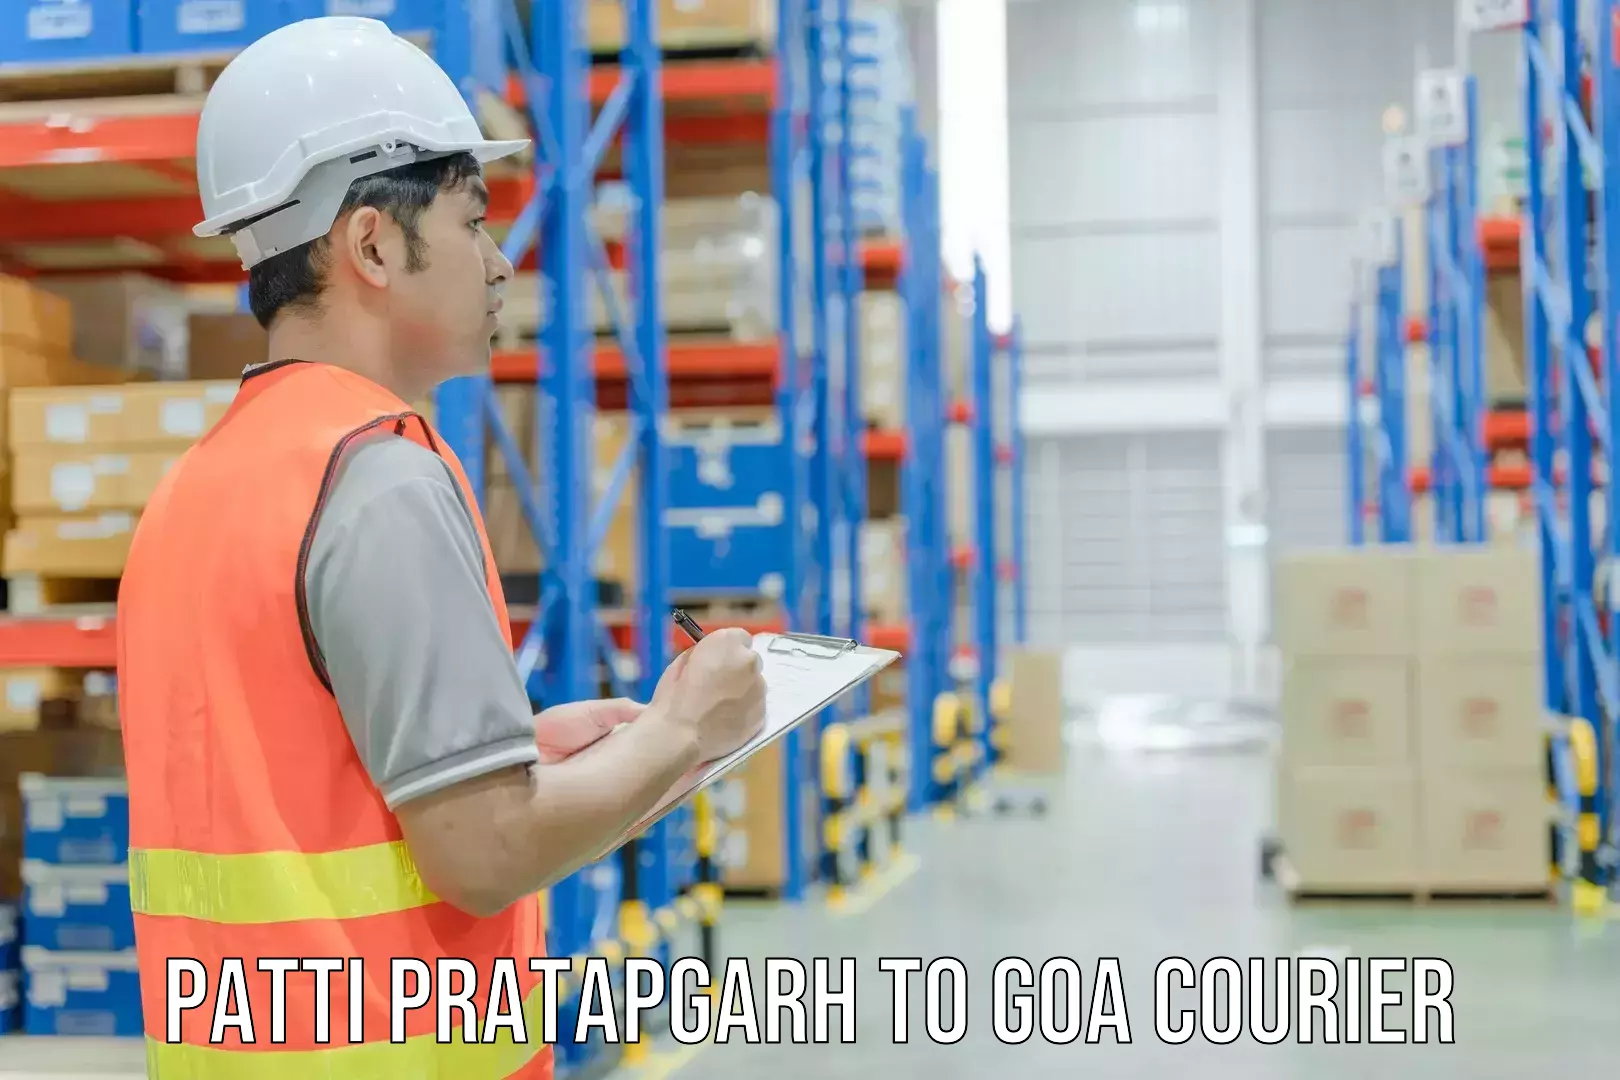 Courier service innovation Patti Pratapgarh to Bardez